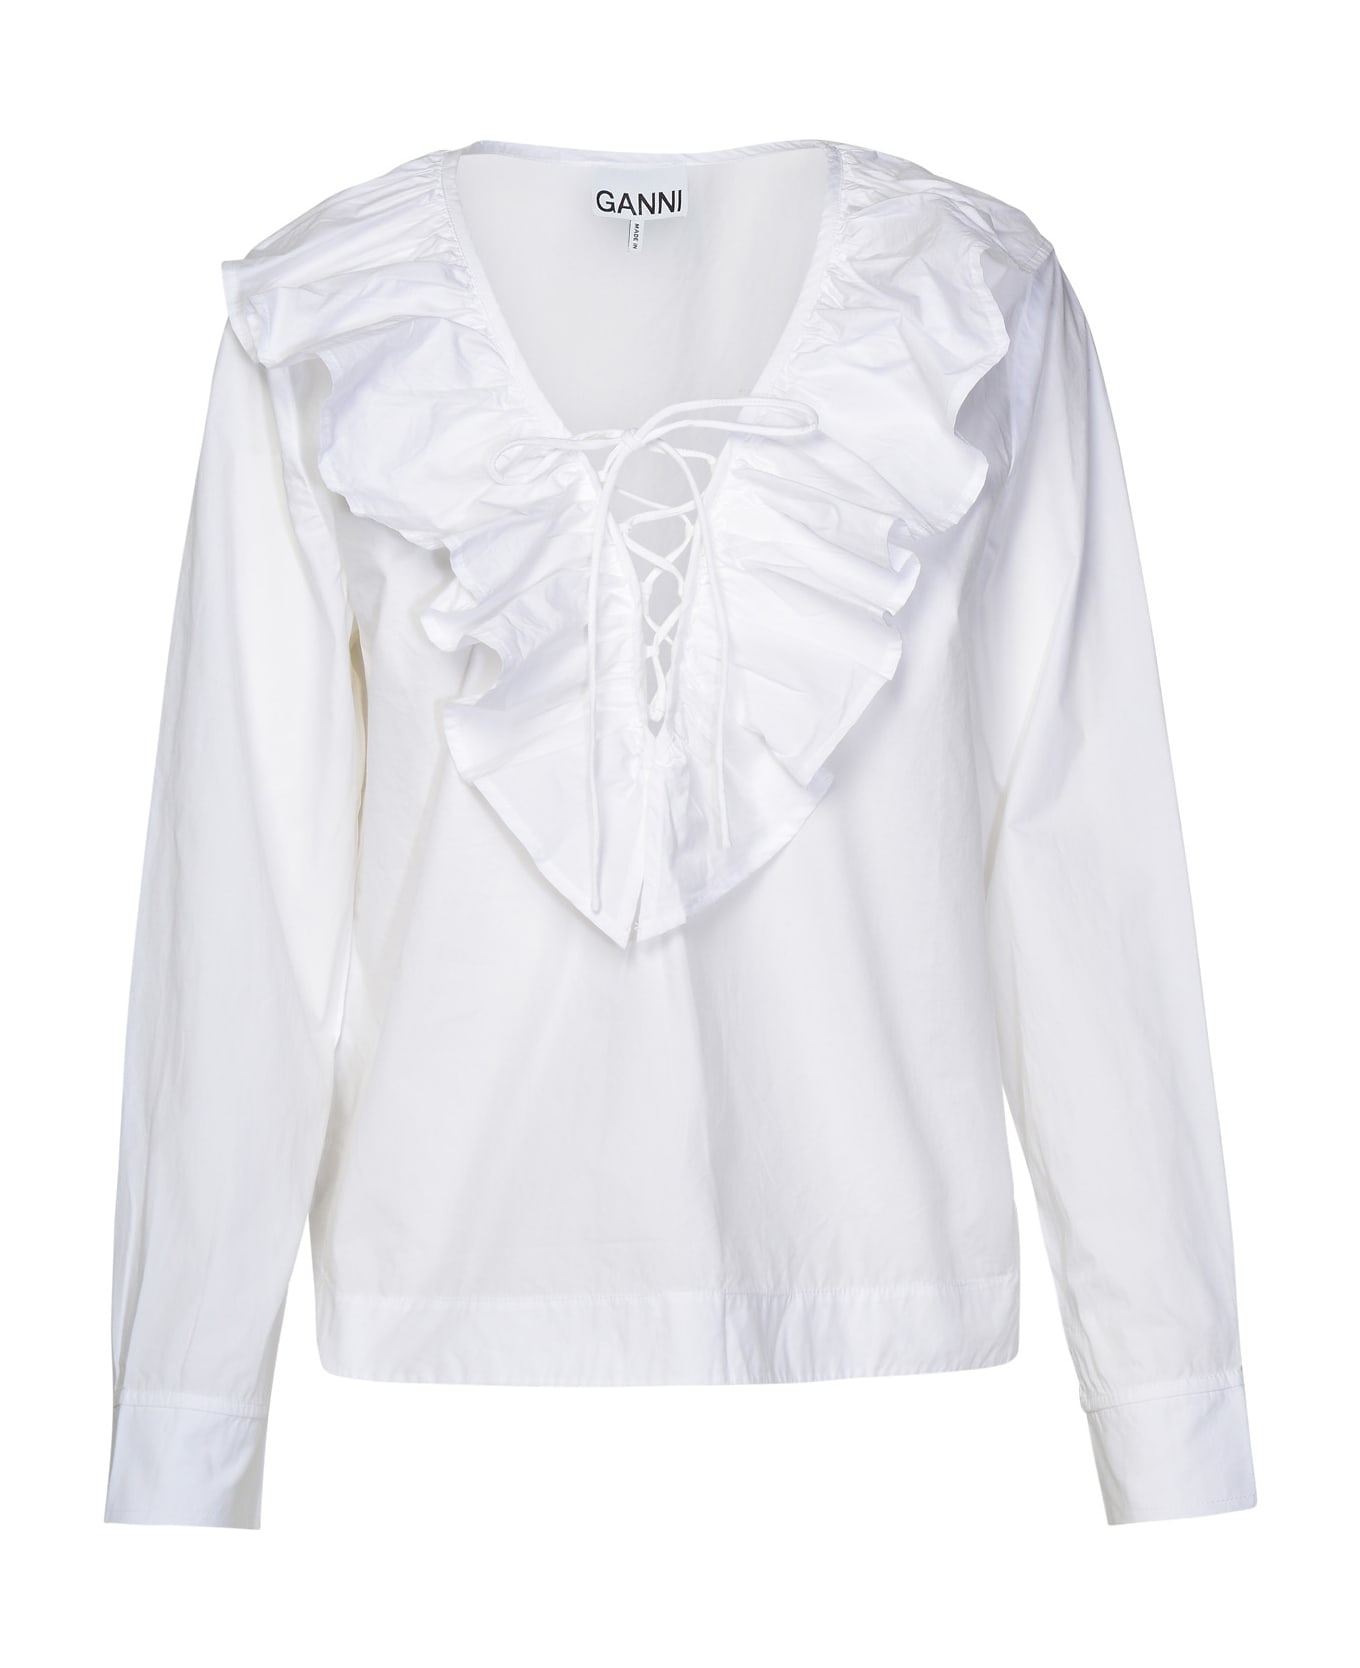 Ganni White Cotton Shirt - White